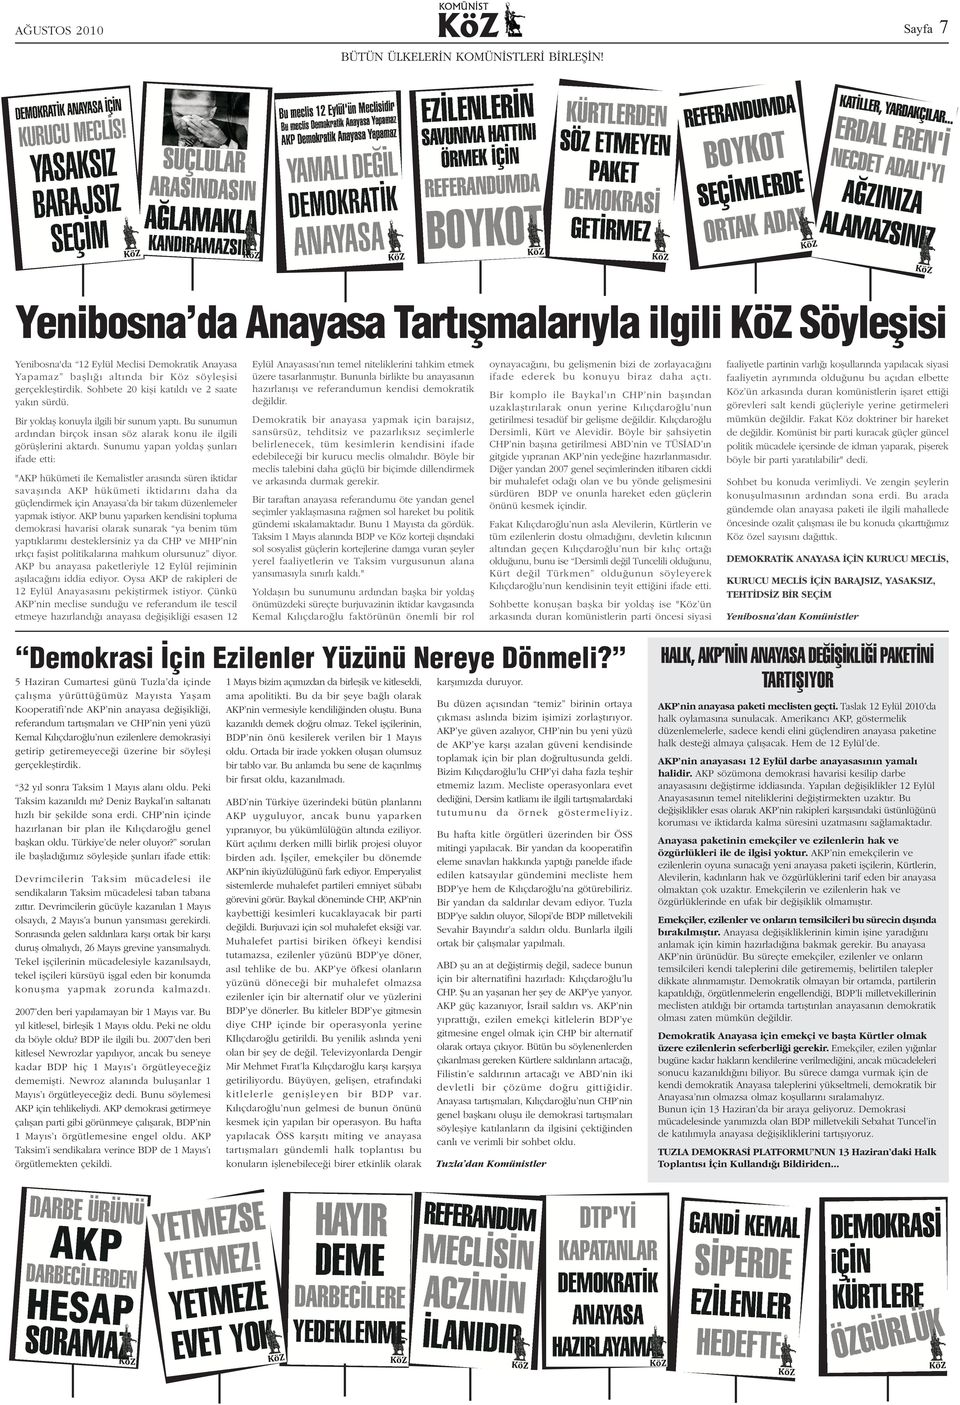 Sunumu yapan yoldaþ þunlarý ifade etti: "AKP hükümeti ile Kemalistler arasýnda süren iktidar savaþýnda AKP hükümeti iktidarýný daha da güçlendirmek için Anayasa da bir takým düzenlemeler yapmak